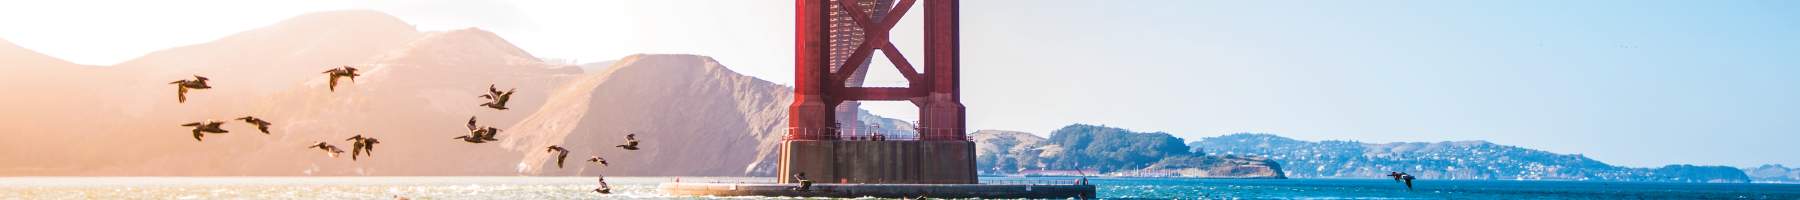 View under the Golden Gate Bridge